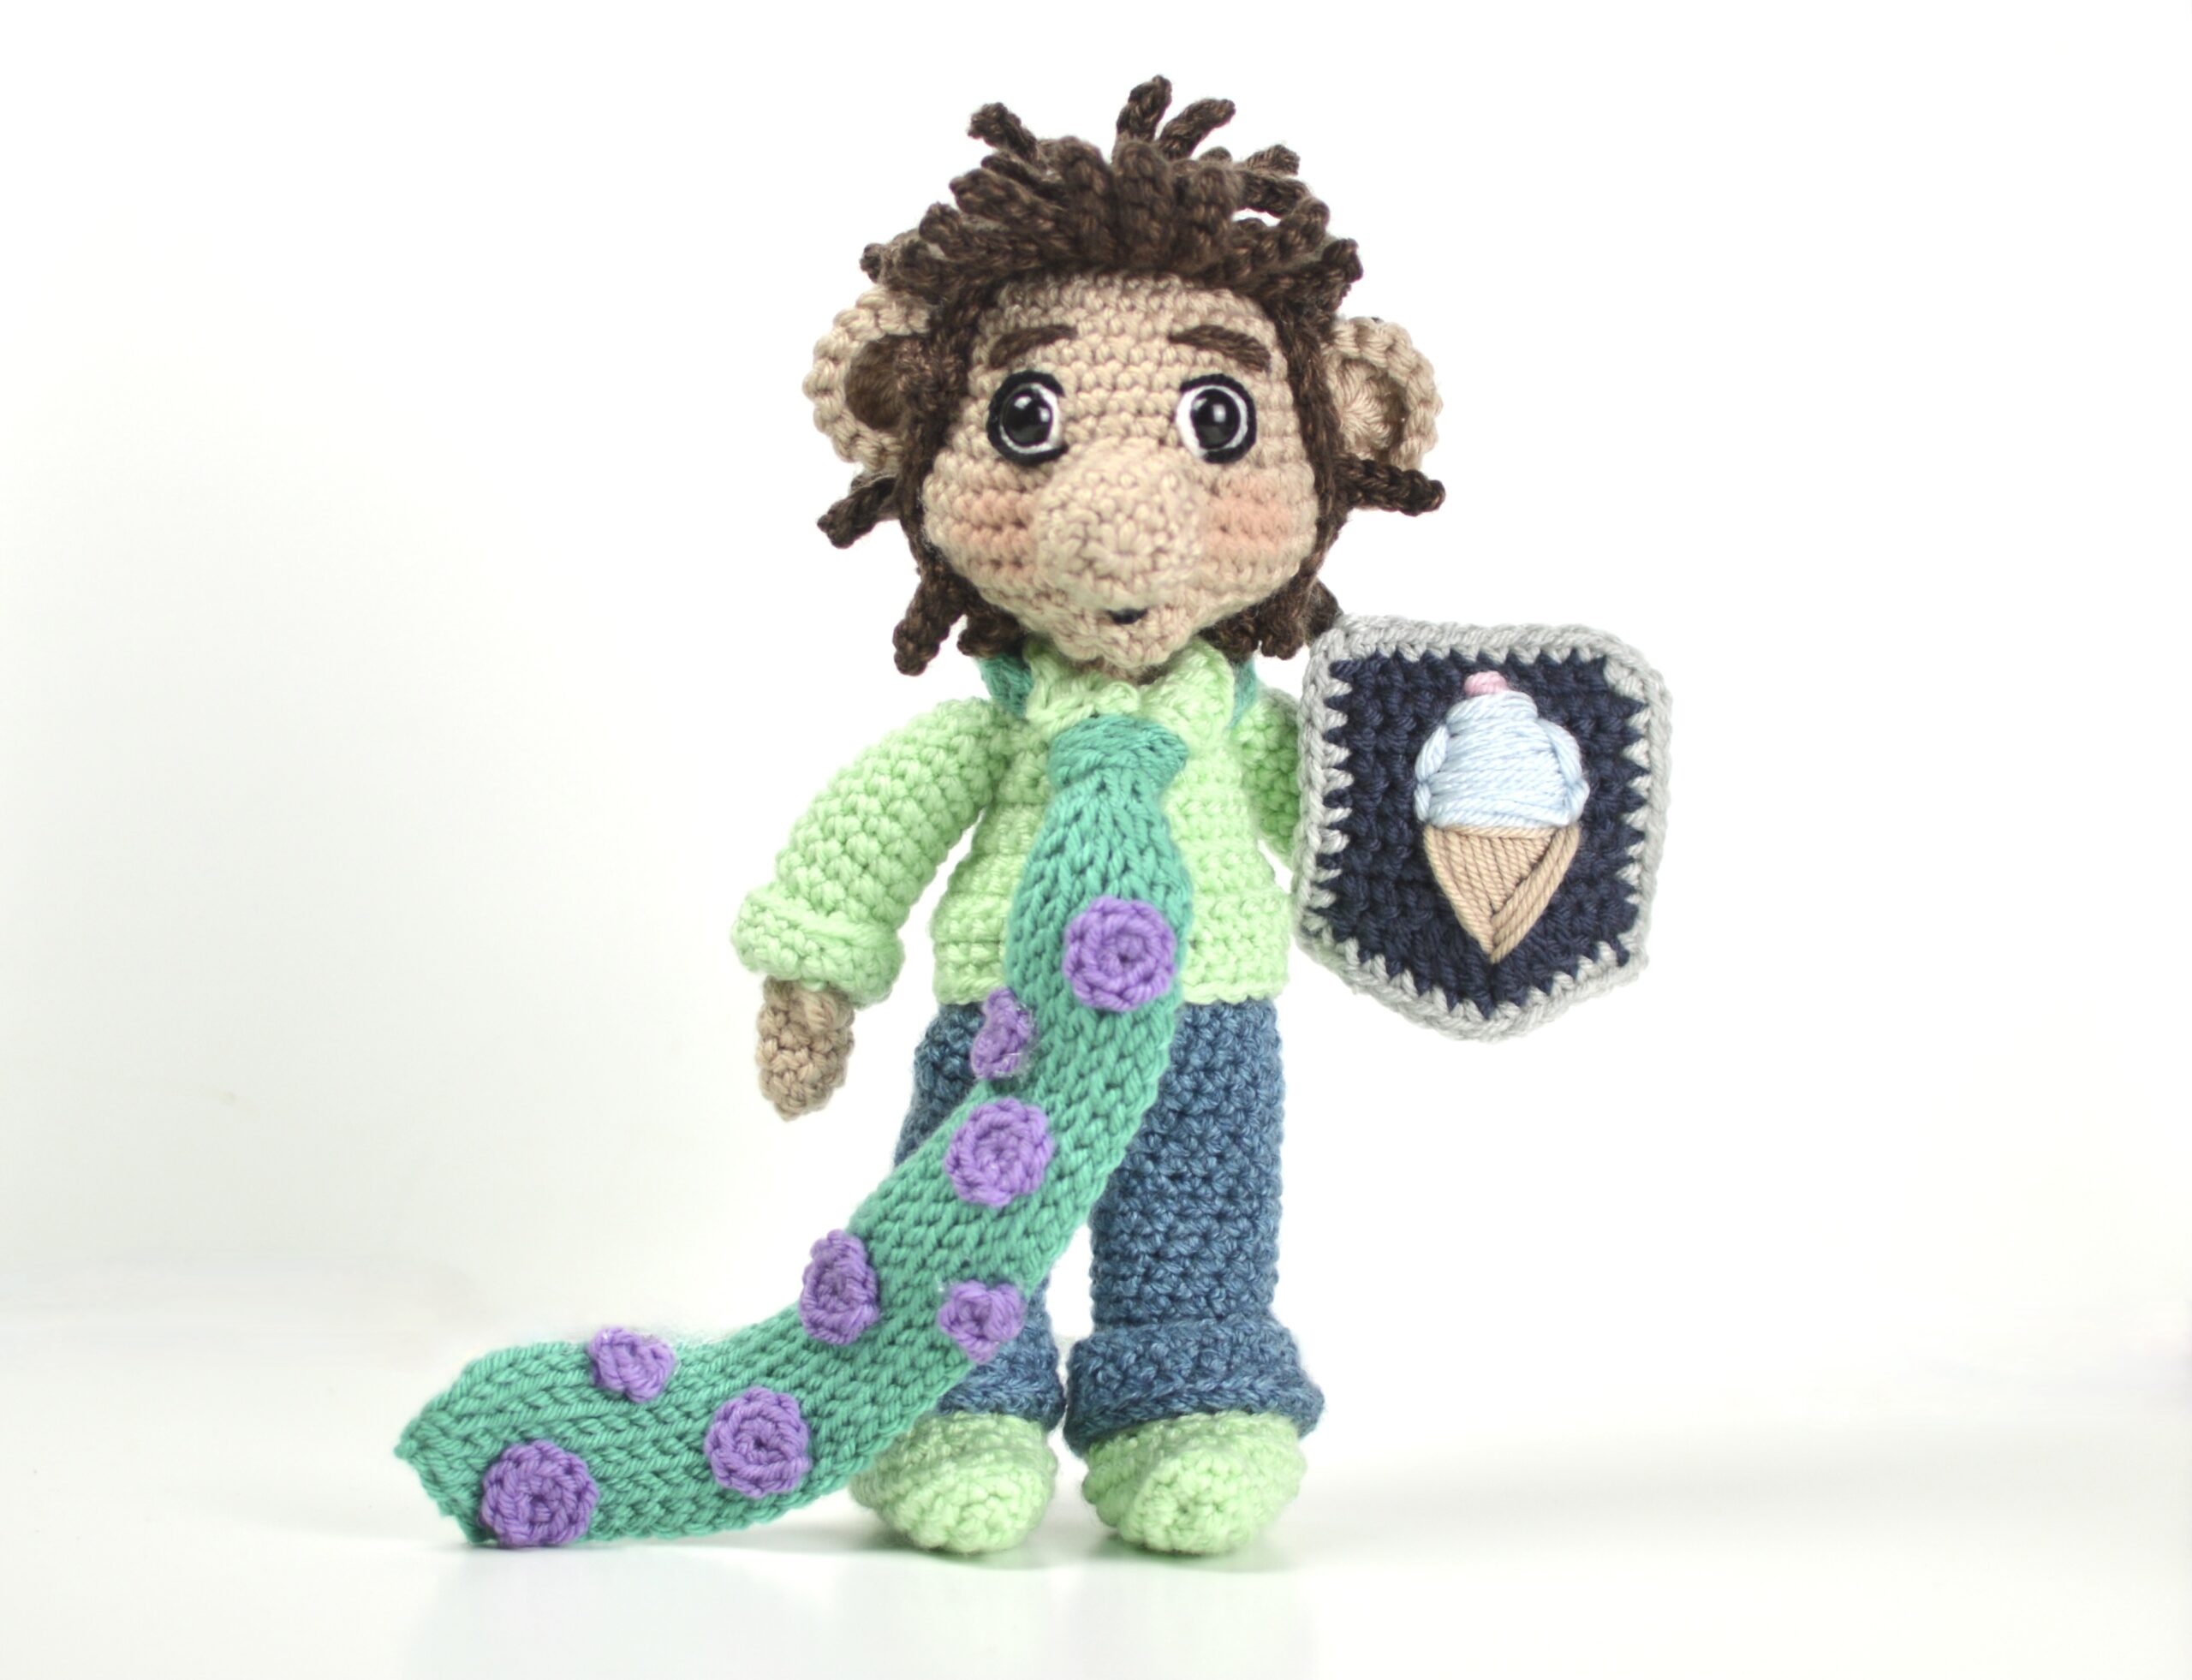 Clover Amour Crochet Hook Set at New River Art & Fiber